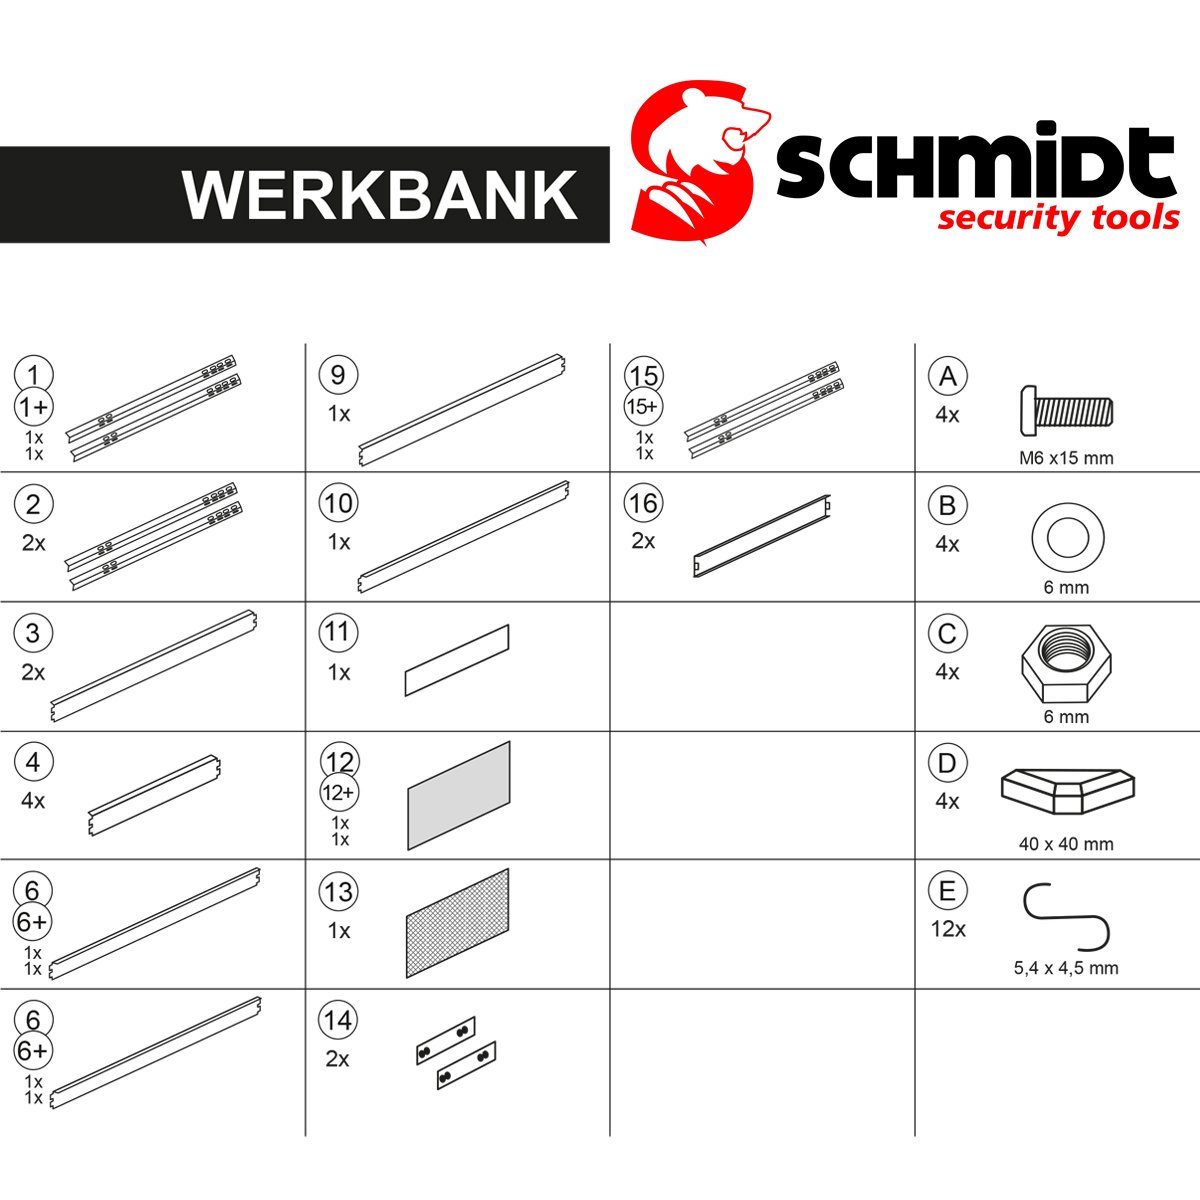 SCHMIDT security tools Werkbank Lochwand Werkzeugbank Werktisch Werkzeugwand Arbeitstisch 140x90x48cm